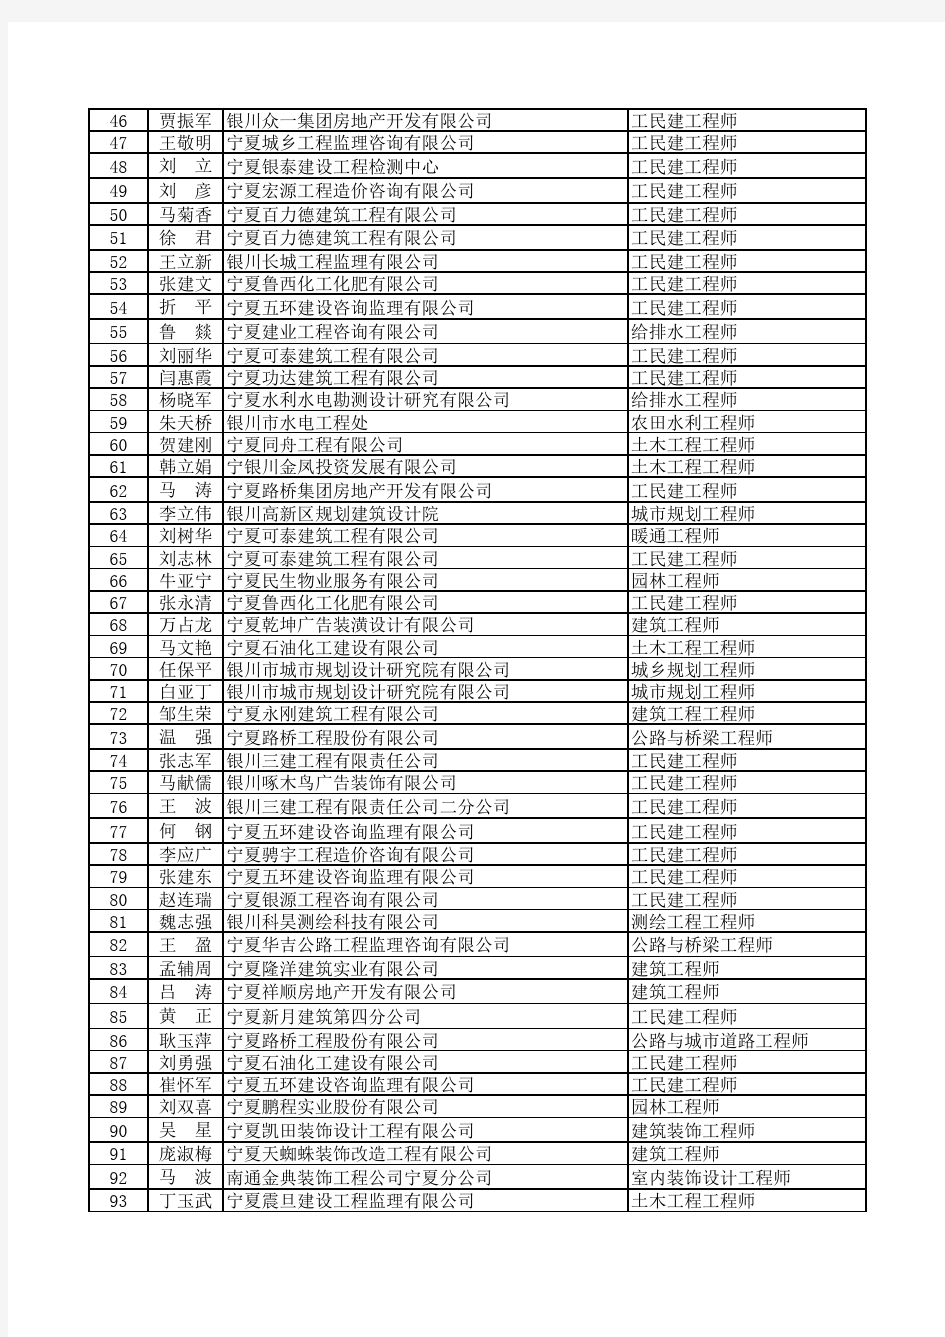 中级专业技术人员合格名单(共237人)